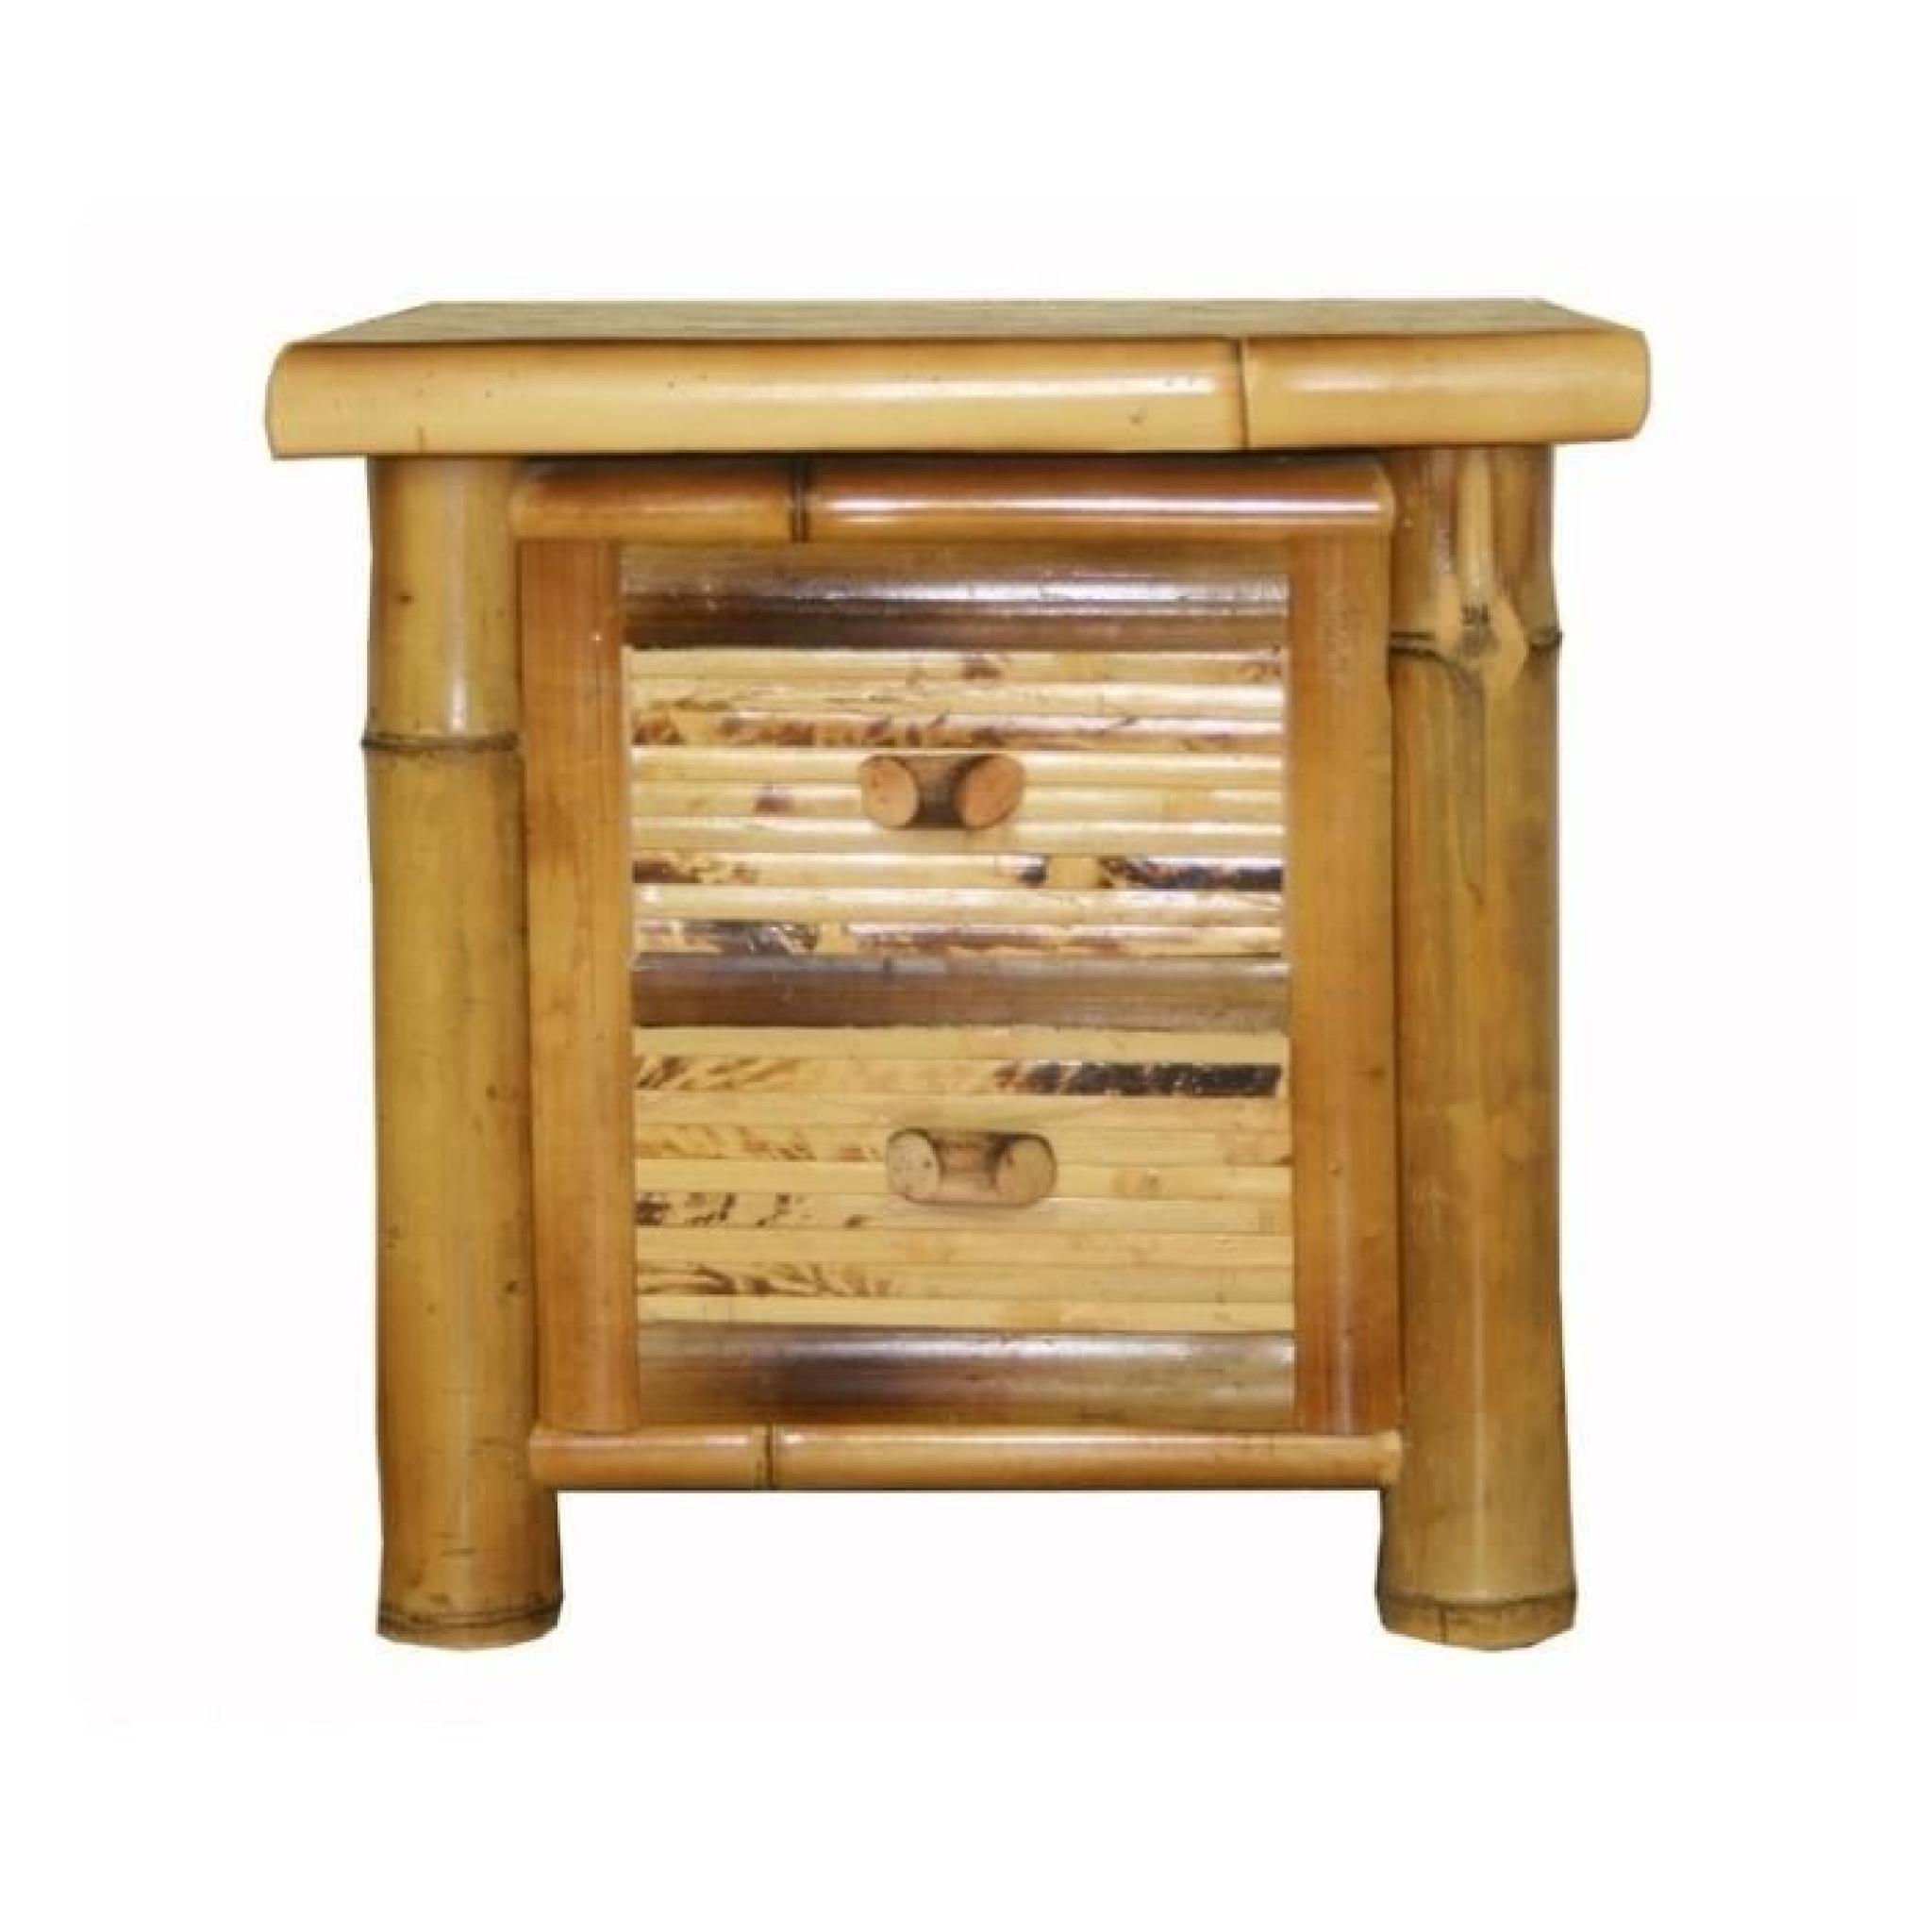 Table de chevet / nuit en bambou couleur brun verni 40x45x40 cm MOC06002 pas cher